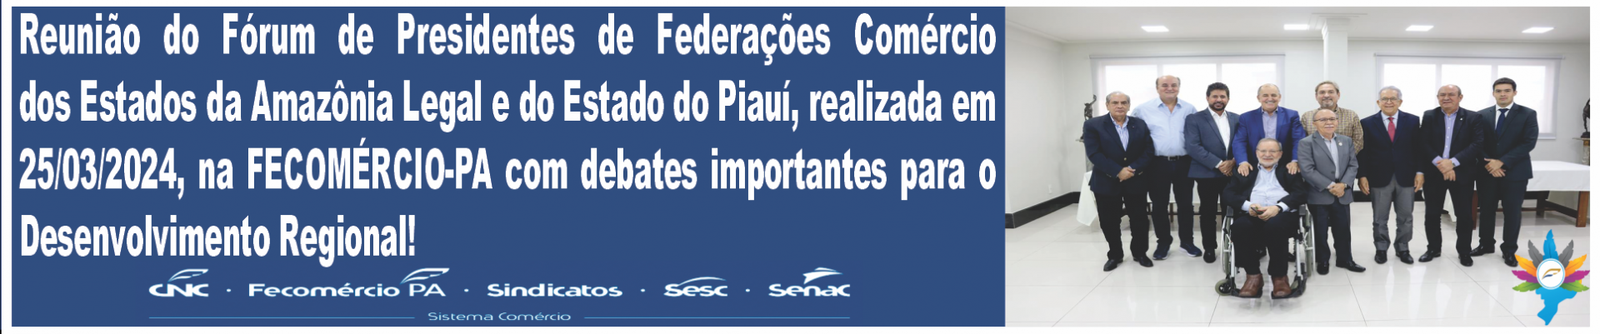 Reunião do Fórum de Presidentes de Federações do Comércio dos Estados da Amazônia Legal e do Piauí 